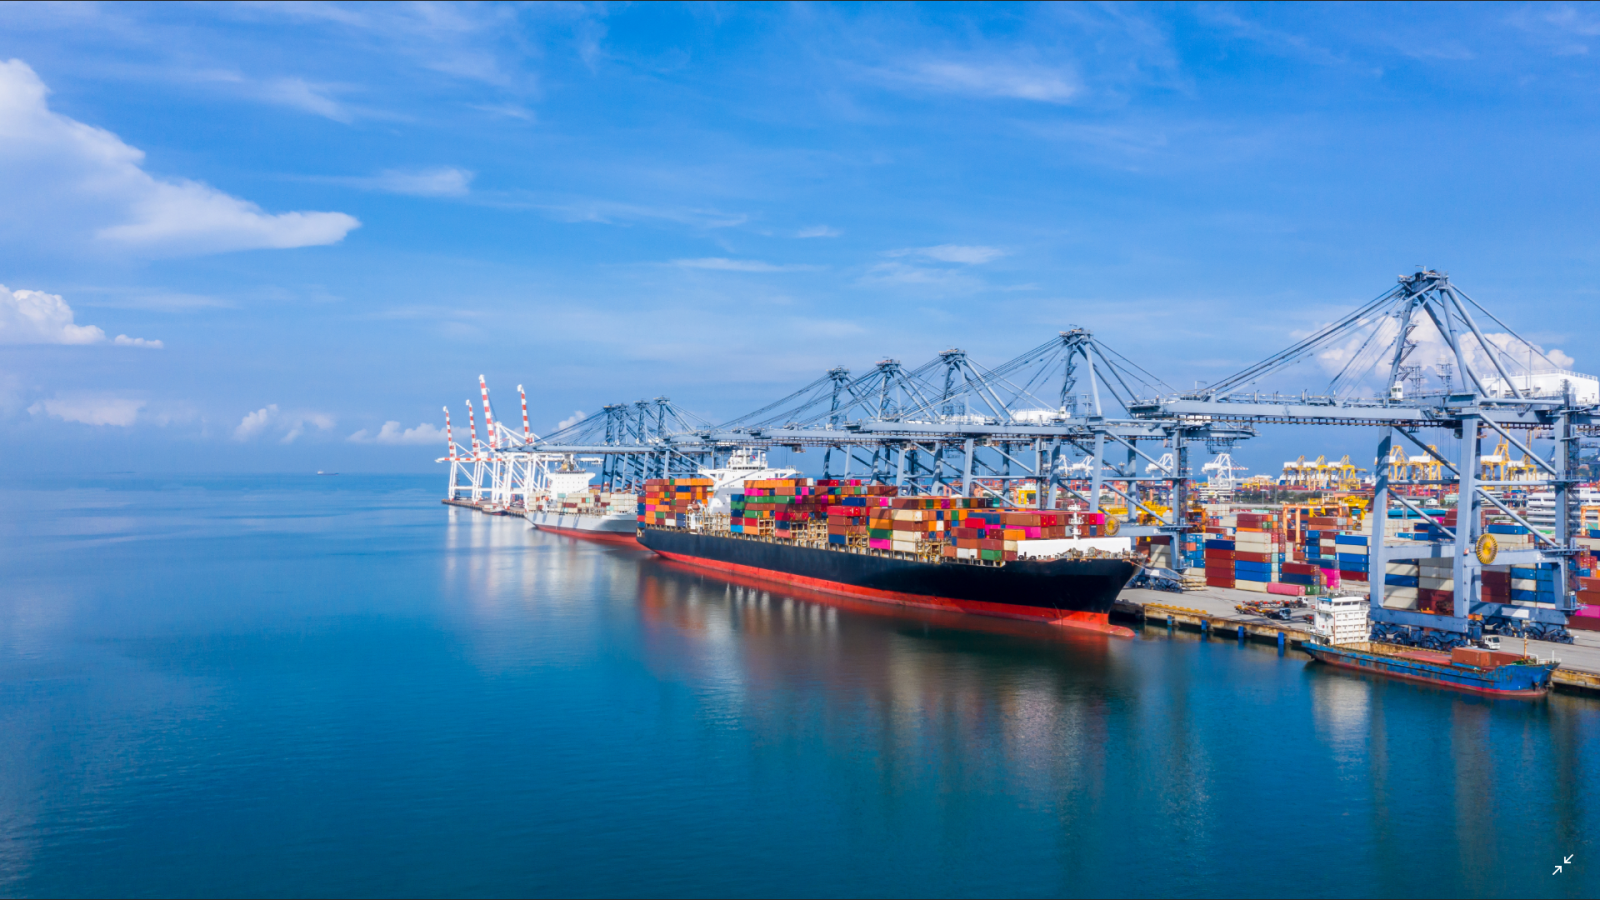 Cảng biển nước sâu Gành Hào - Bạc Liêu sẽ là điểm nhấn mũi nhọn trong phát triển kinh tế ven biển của ĐBSCL cũng như tạo chuỗi giá trị khép kín của vận tải biển Châu Á Thái Bình Dương kết nối với thế giới